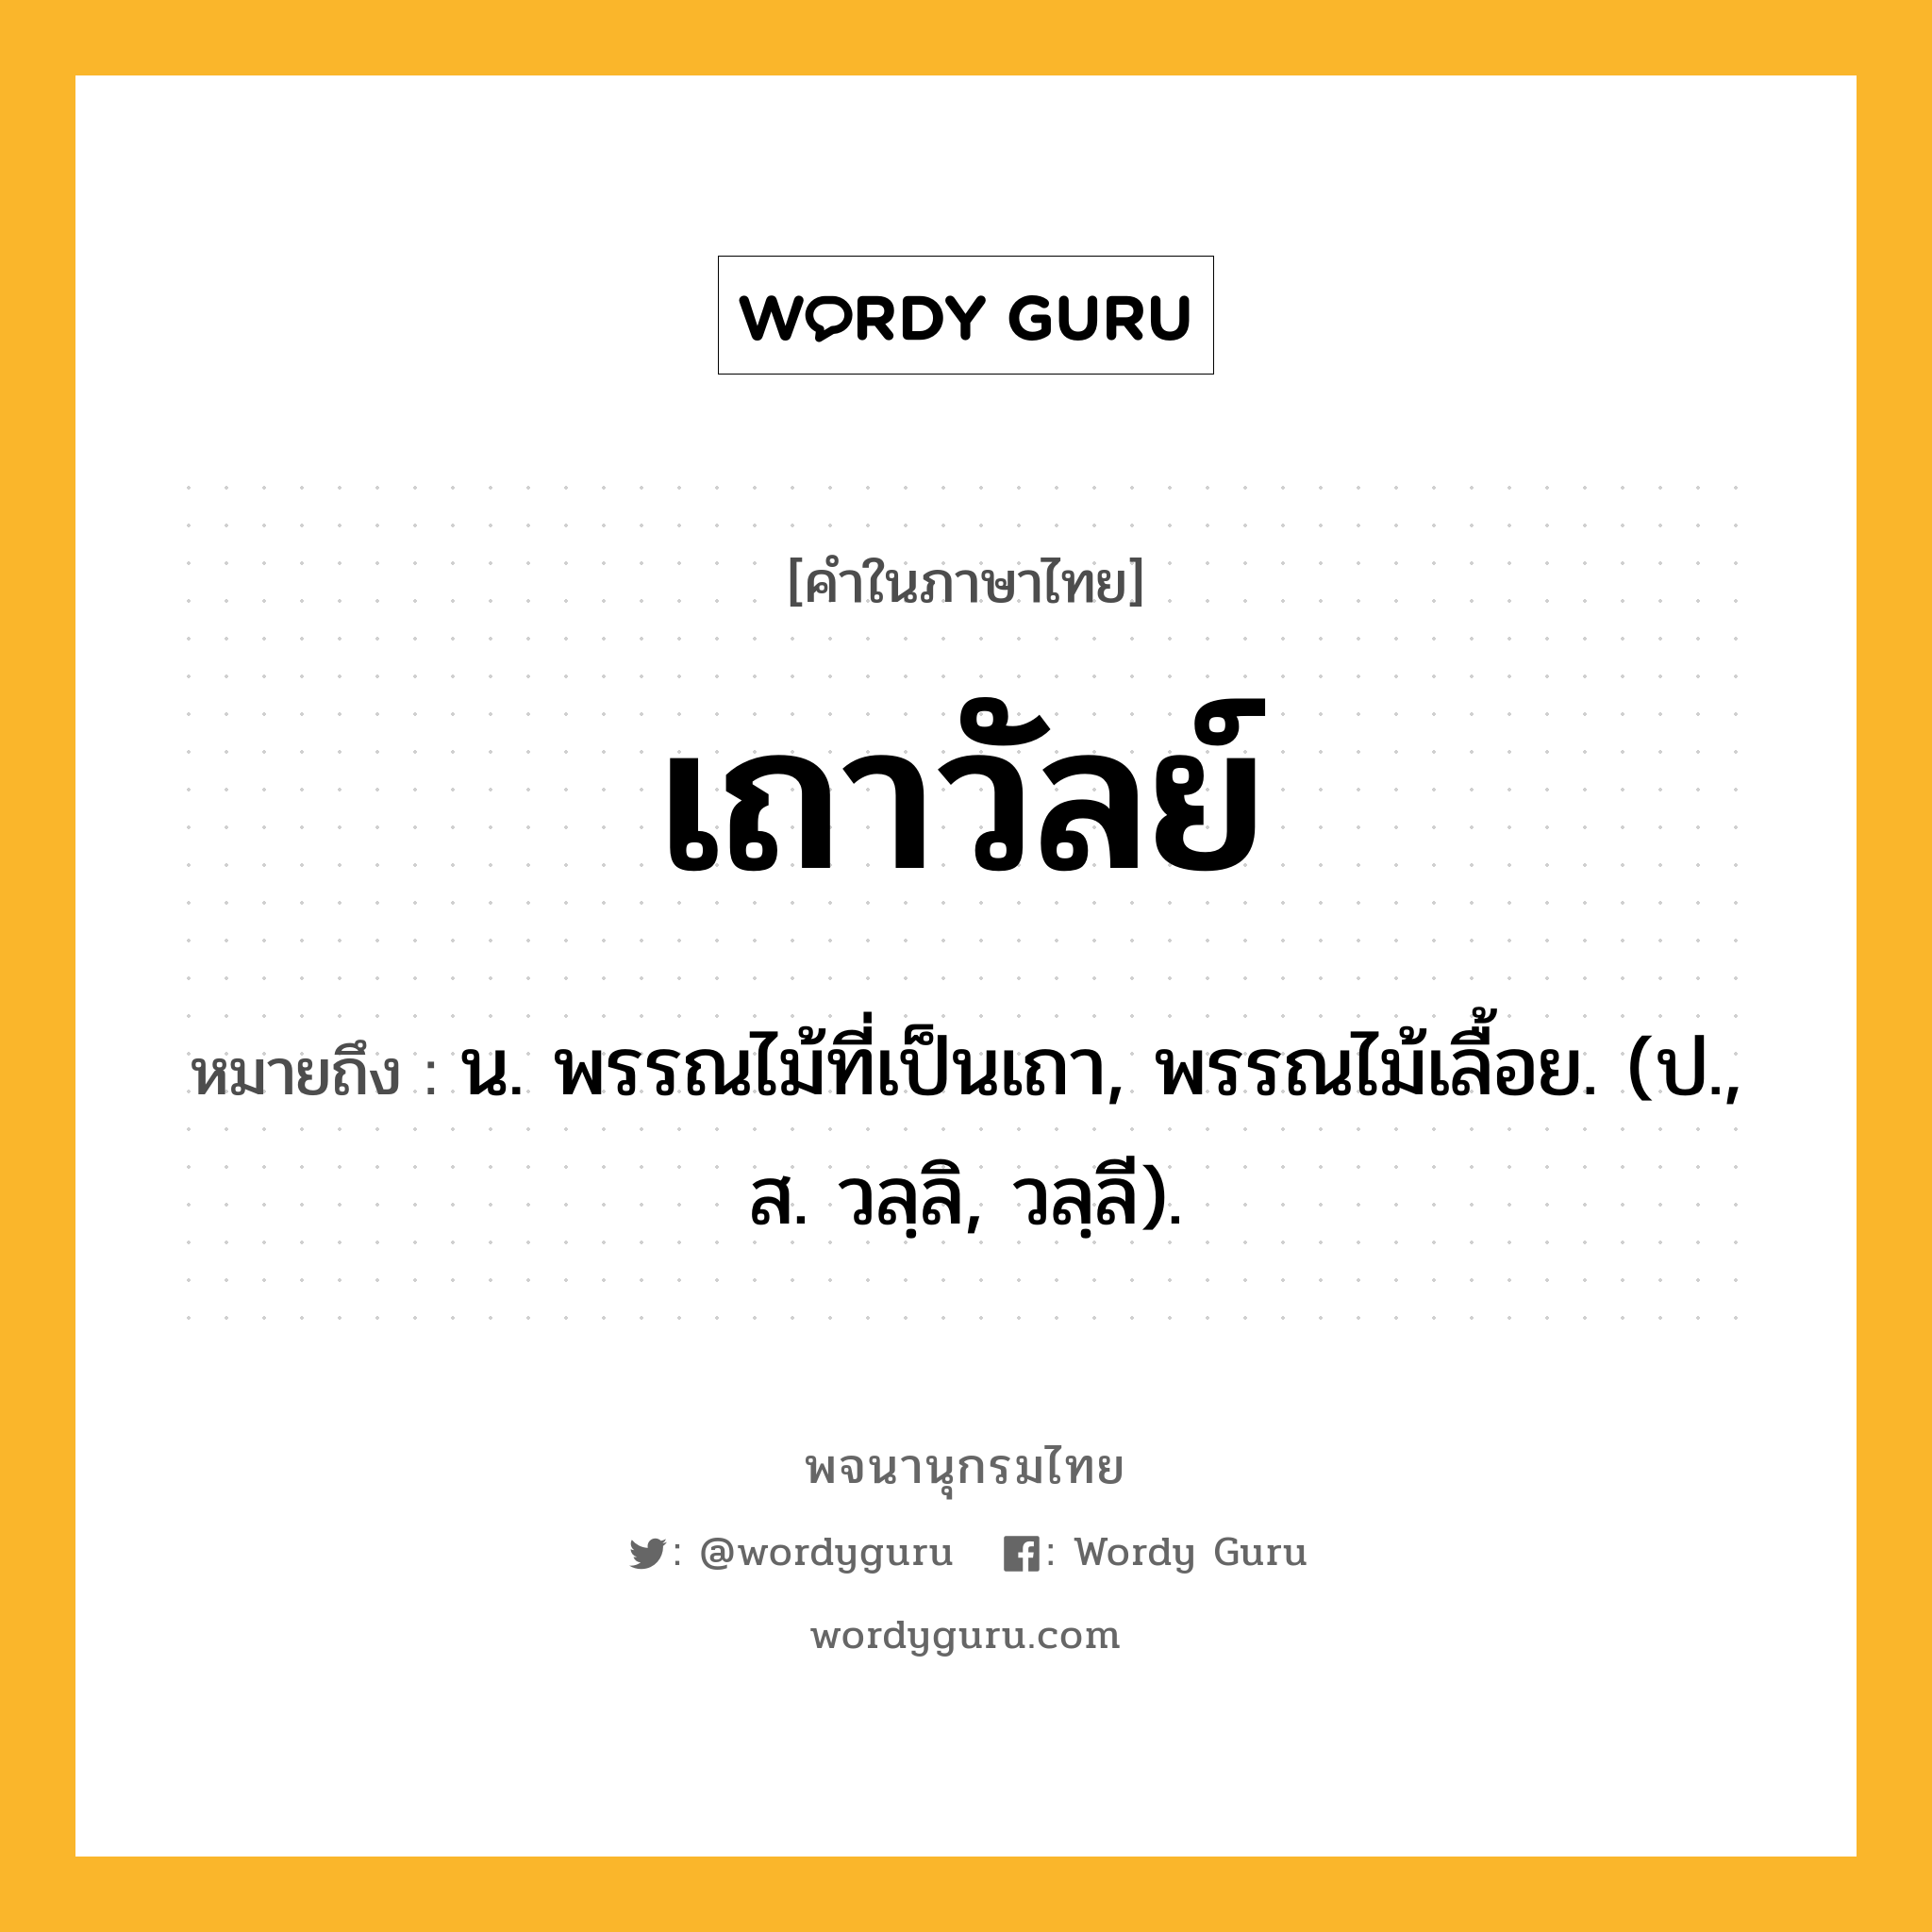 เถาวัลย์ ความหมาย หมายถึงอะไร?, คำในภาษาไทย เถาวัลย์ หมายถึง น. พรรณไม้ที่เป็นเถา, พรรณไม้เลื้อย. (ป., ส. วลฺลิ, วลฺลี).